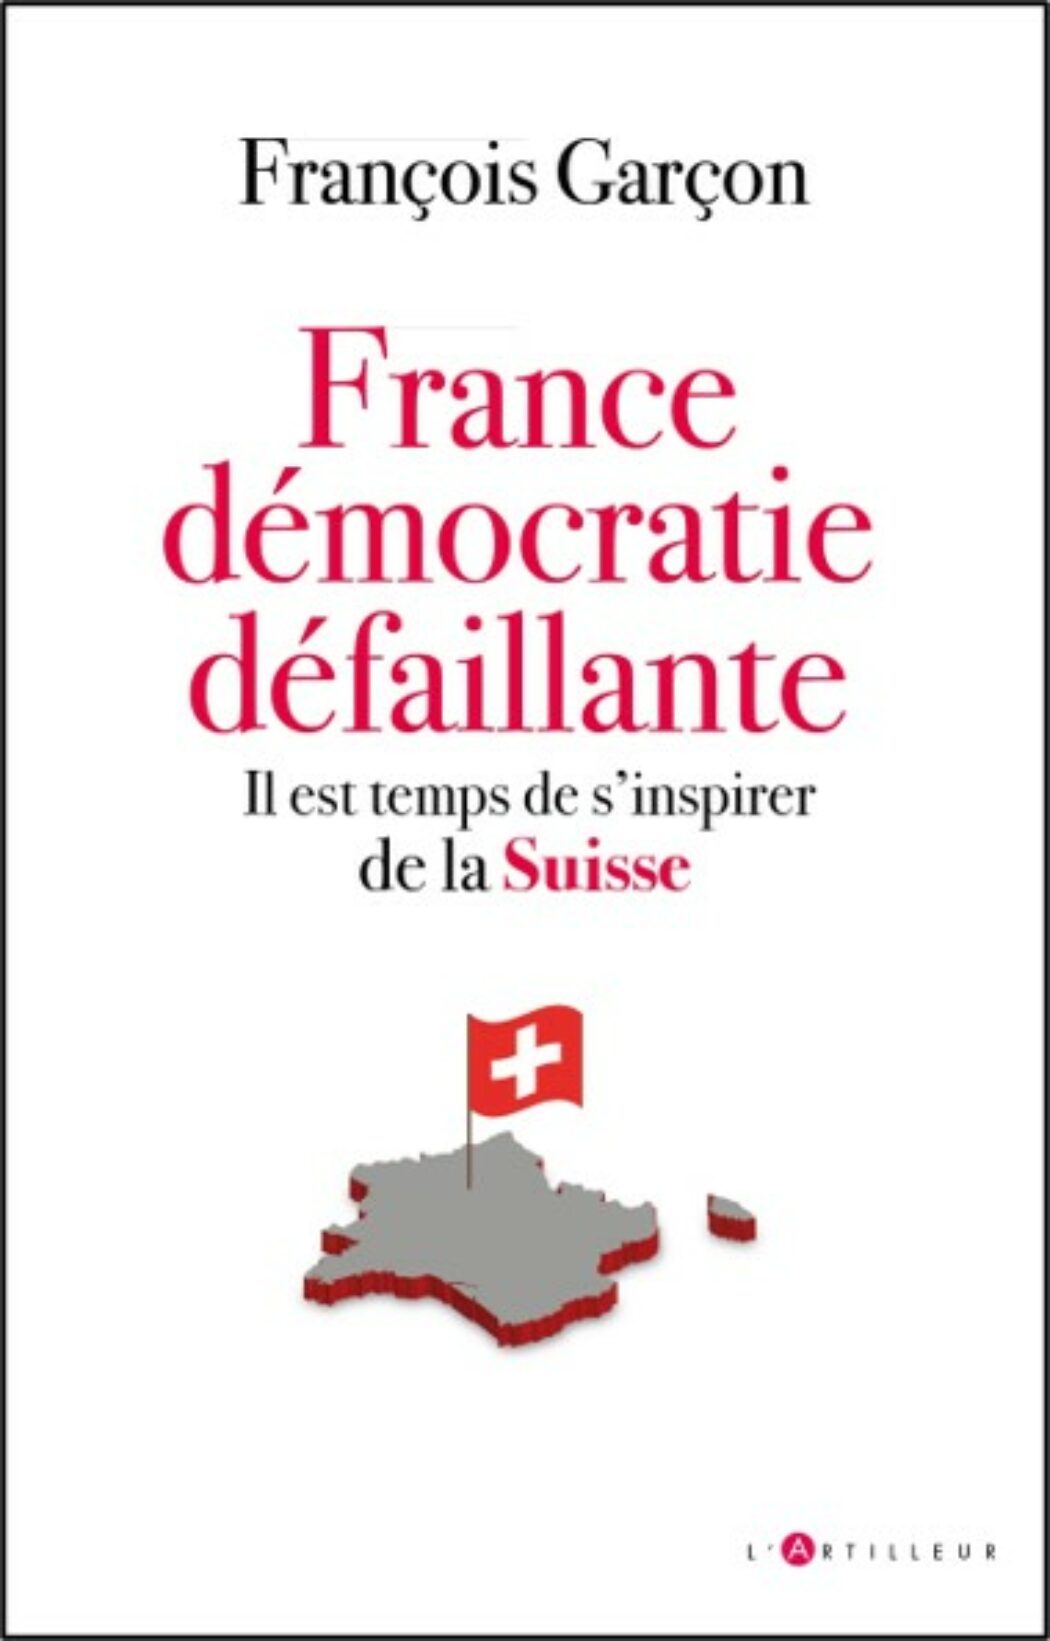 Principe de subsidiarité : la France ferait bien de s’inspirer de la Suisse